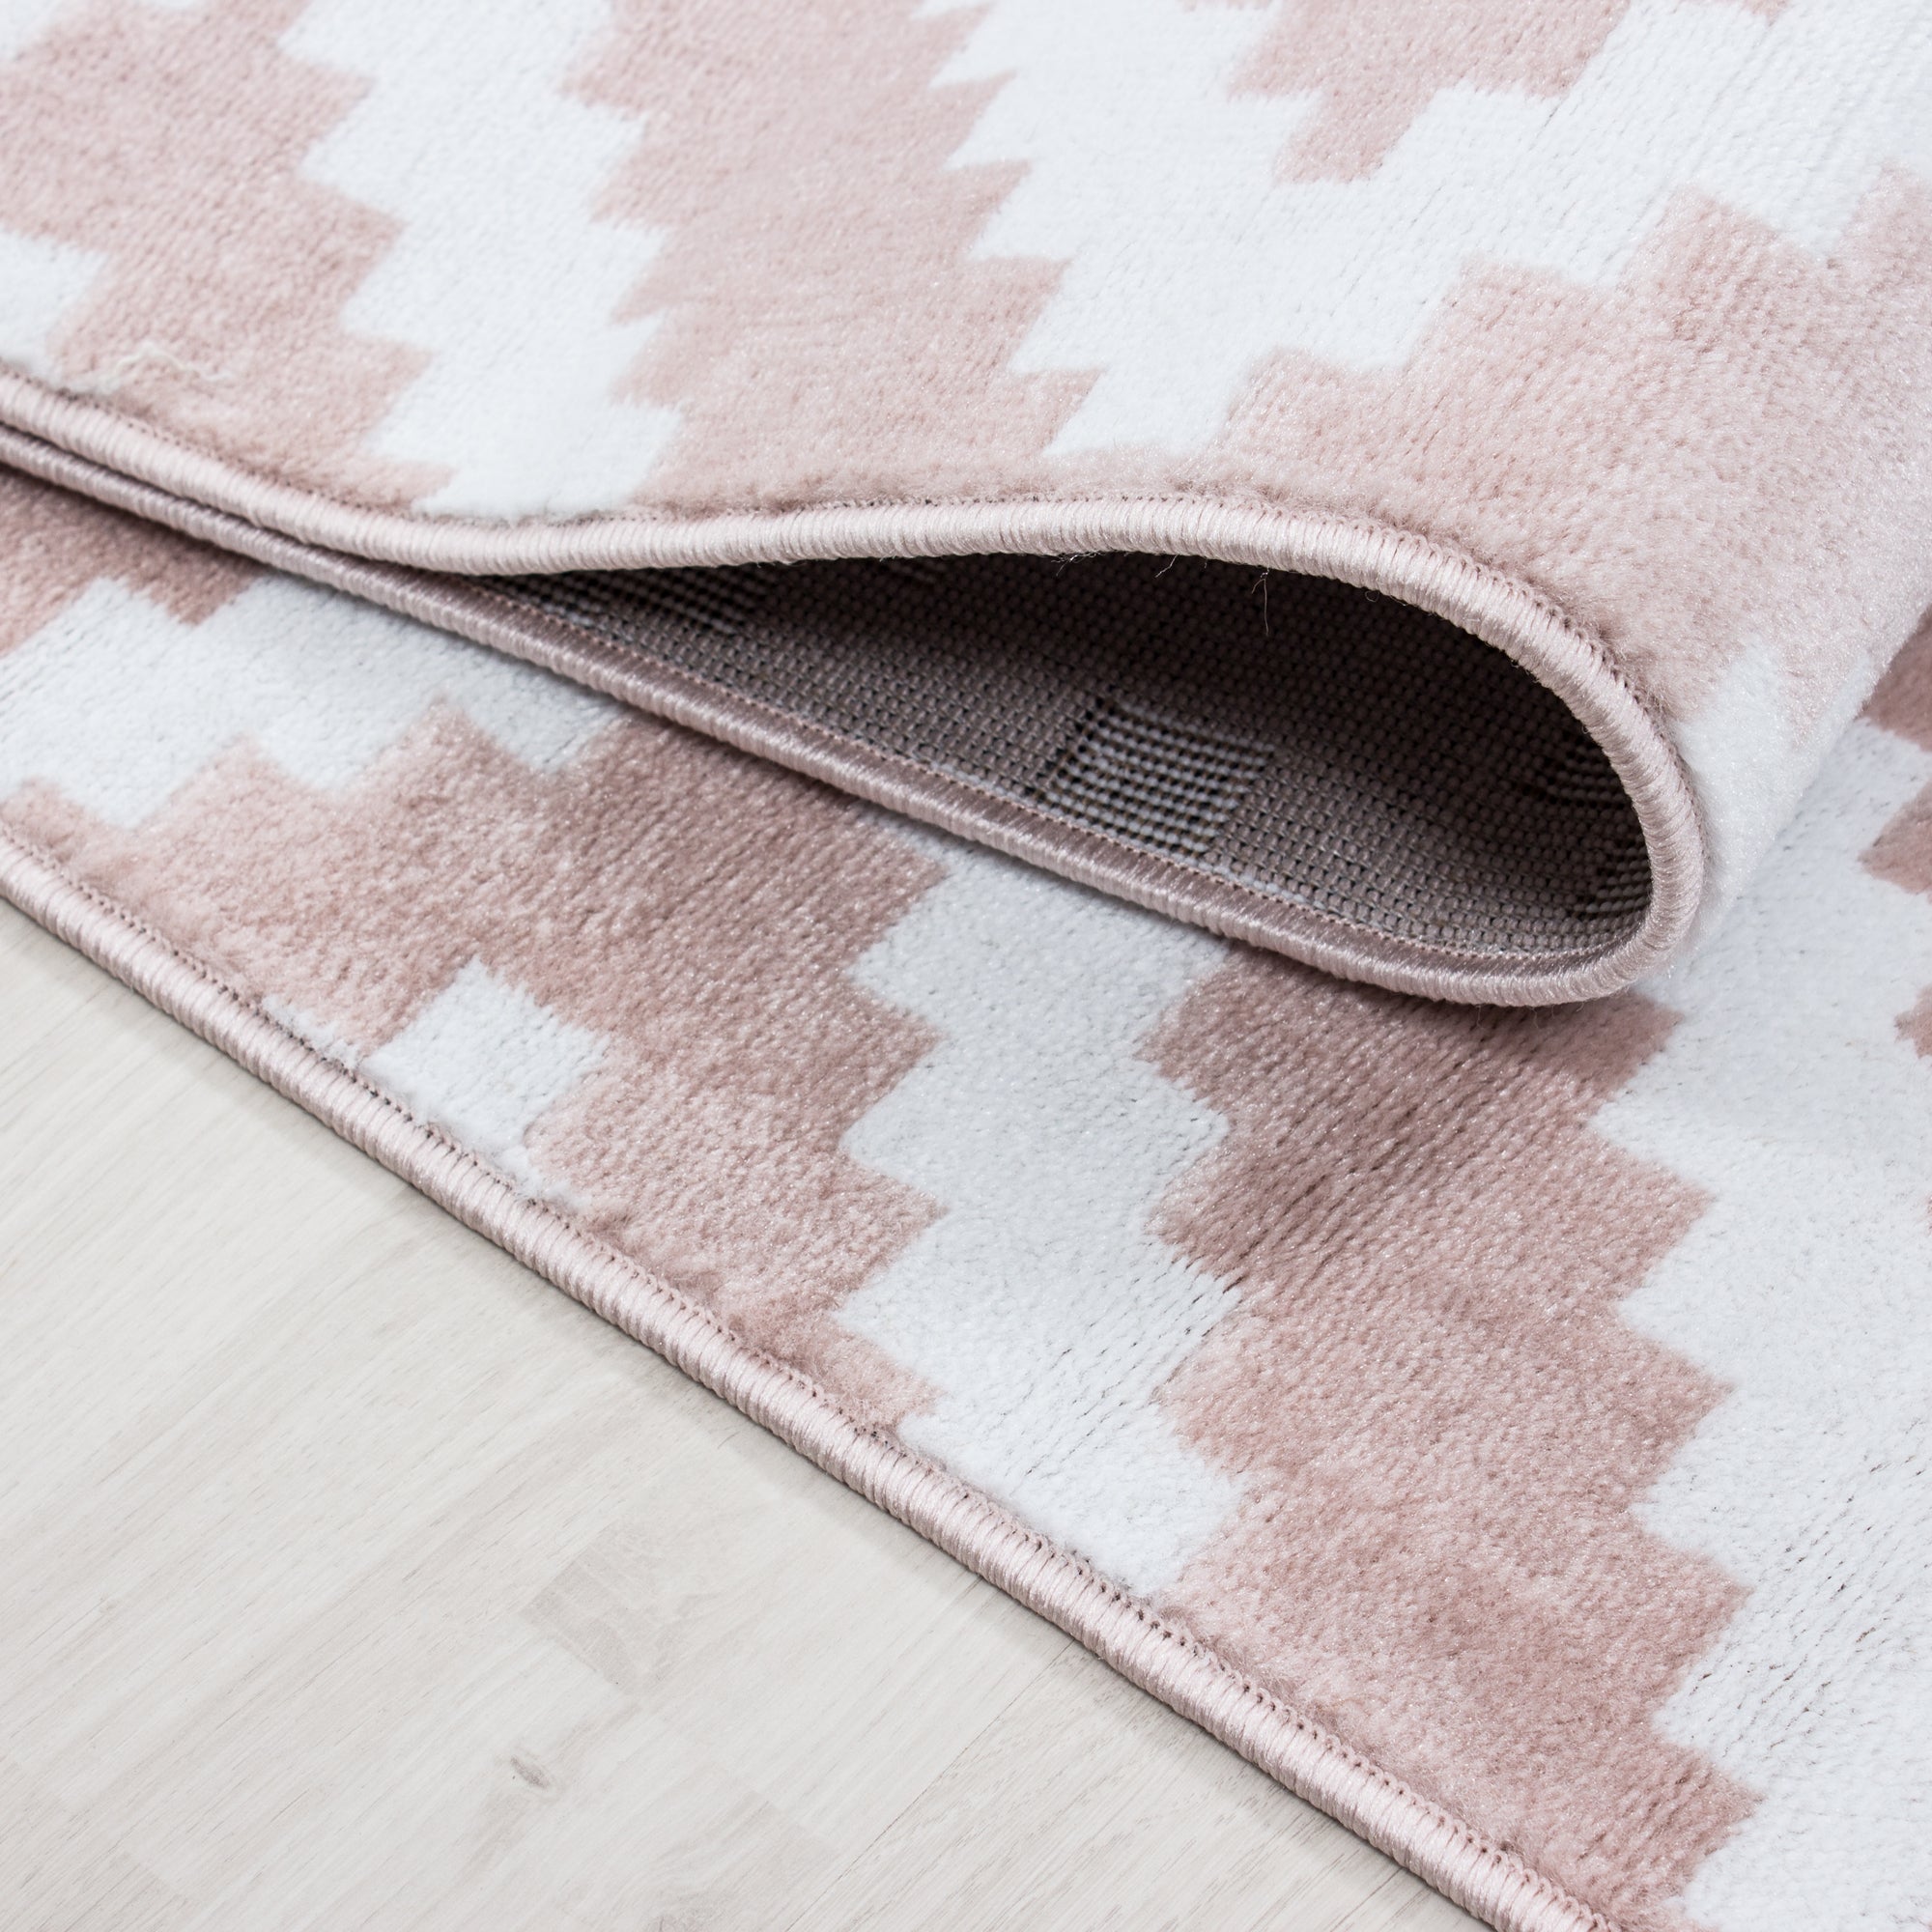 Teppich Bettumrandung 3 Teile Kurzflor Läuferset Karo Muster Pink Weiss Meliert